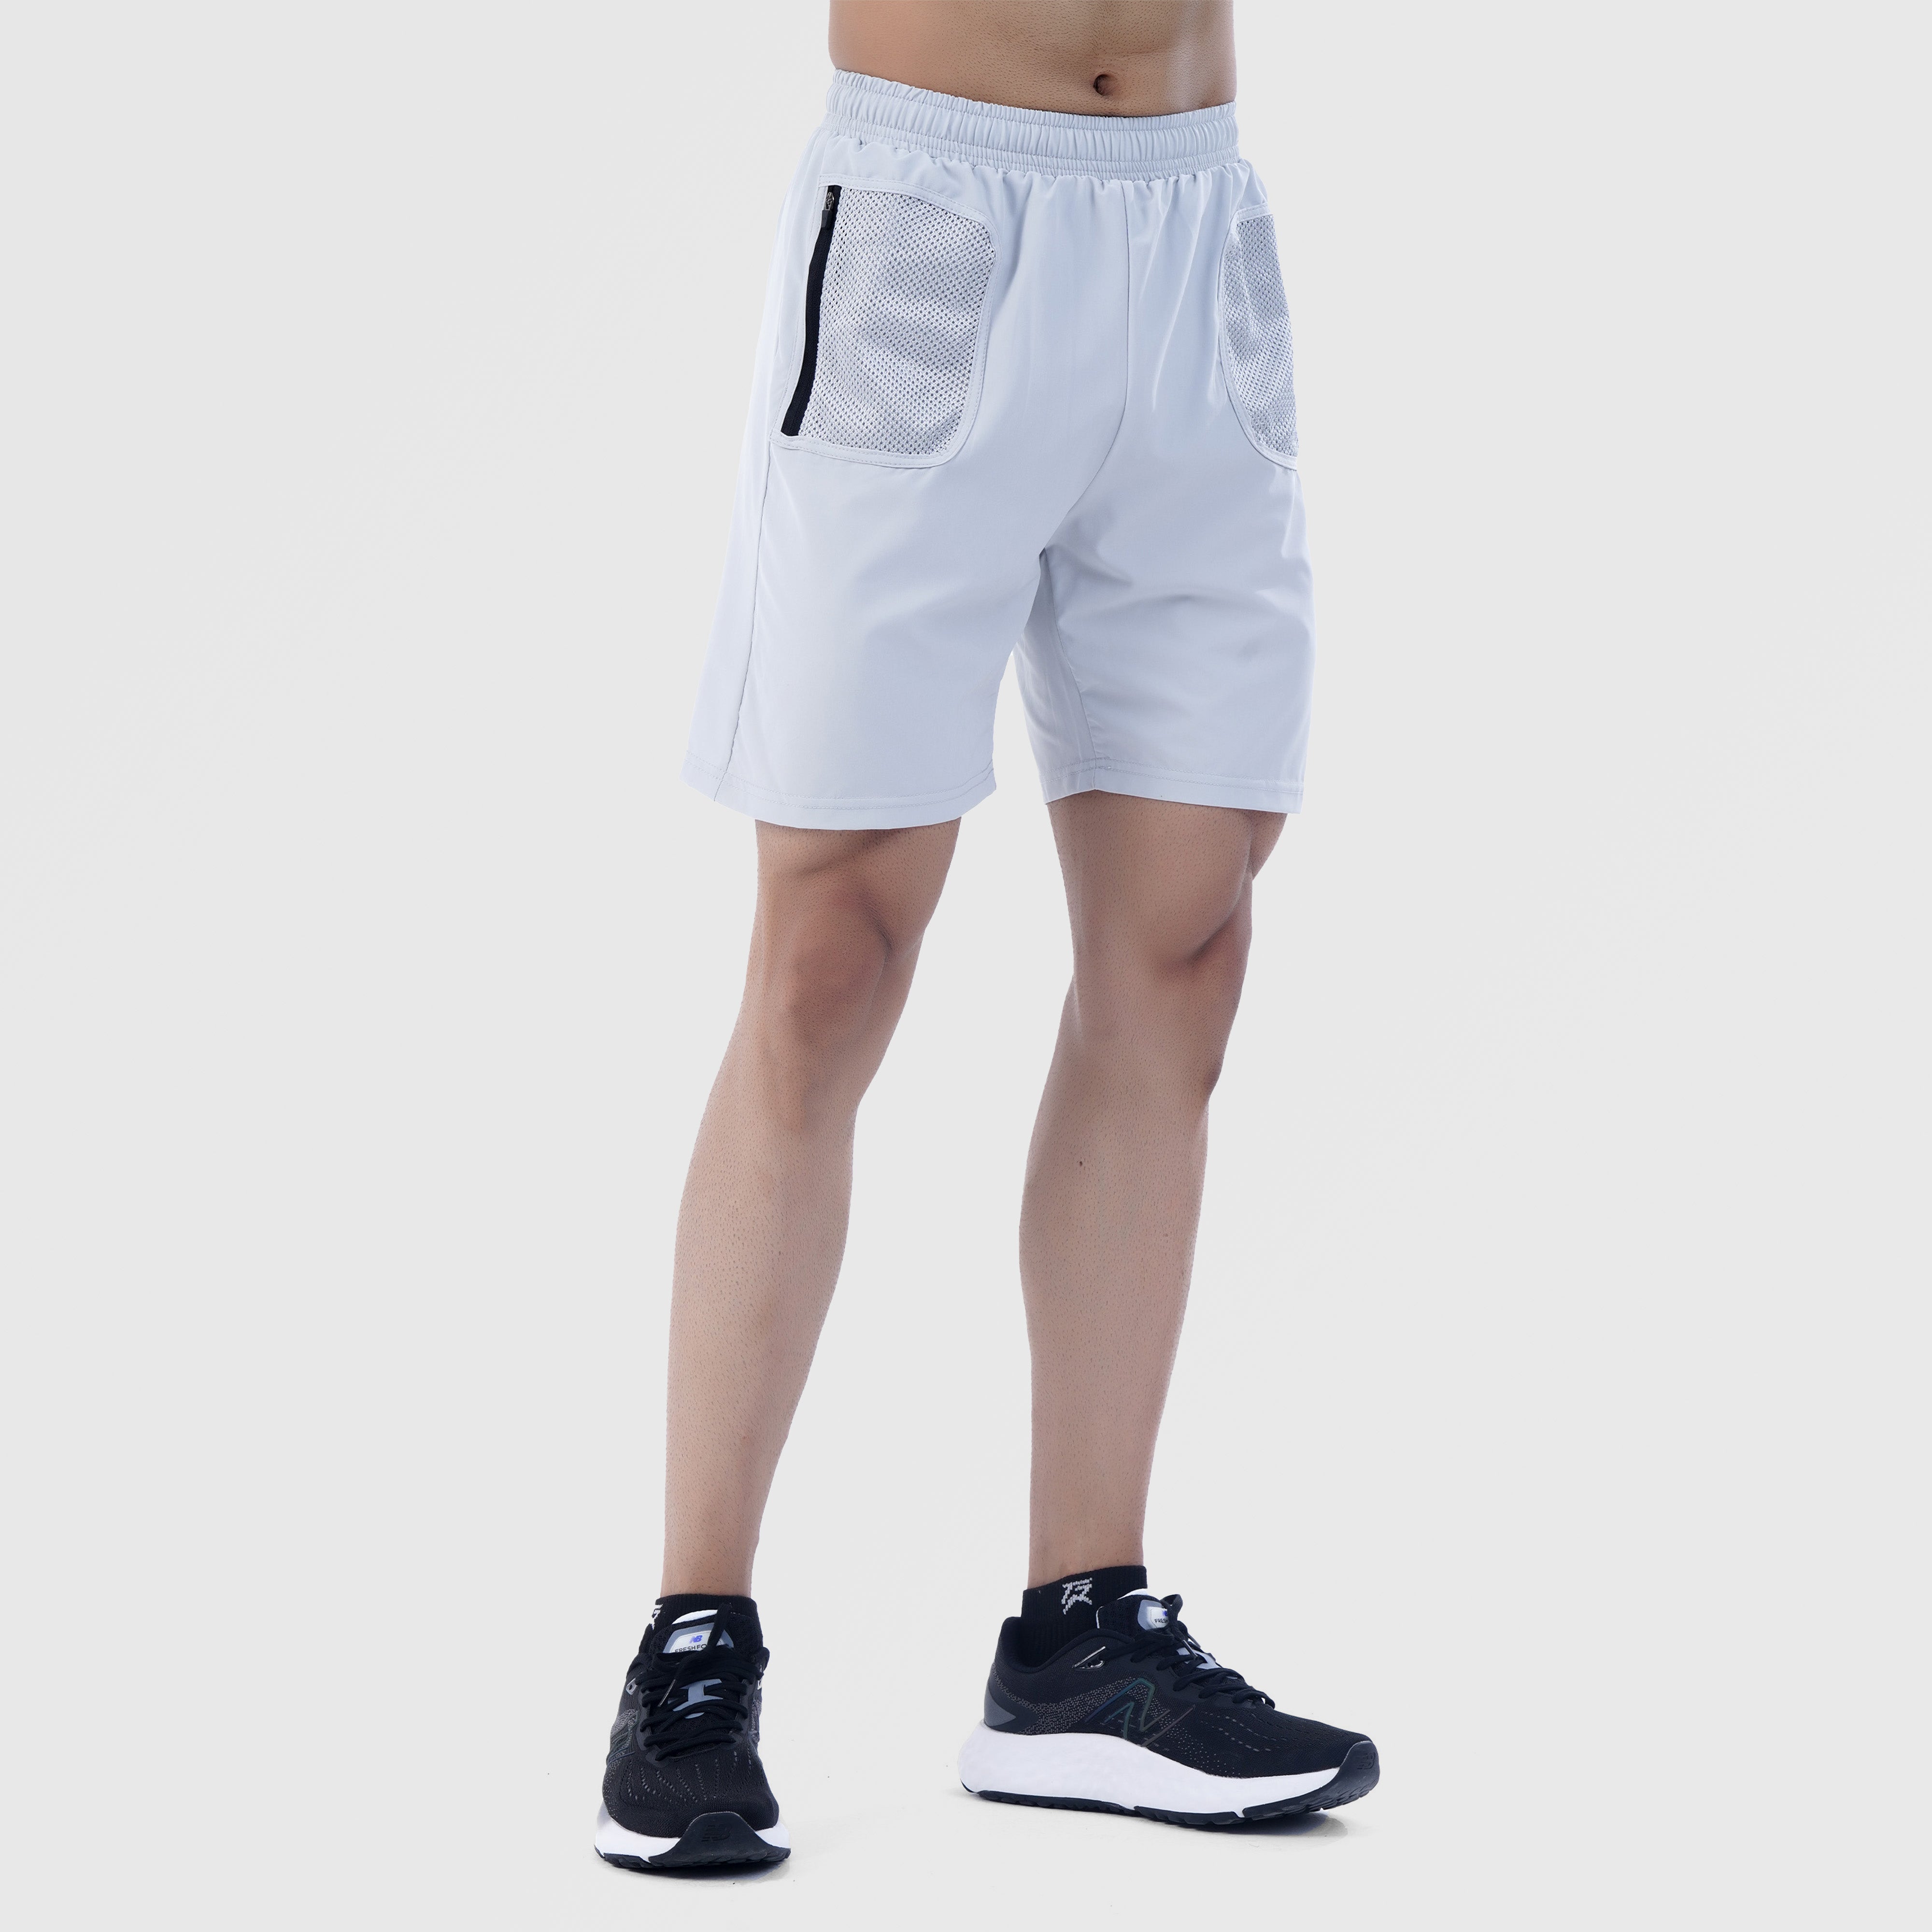 Performa Fit Shorts (Ash Grey)